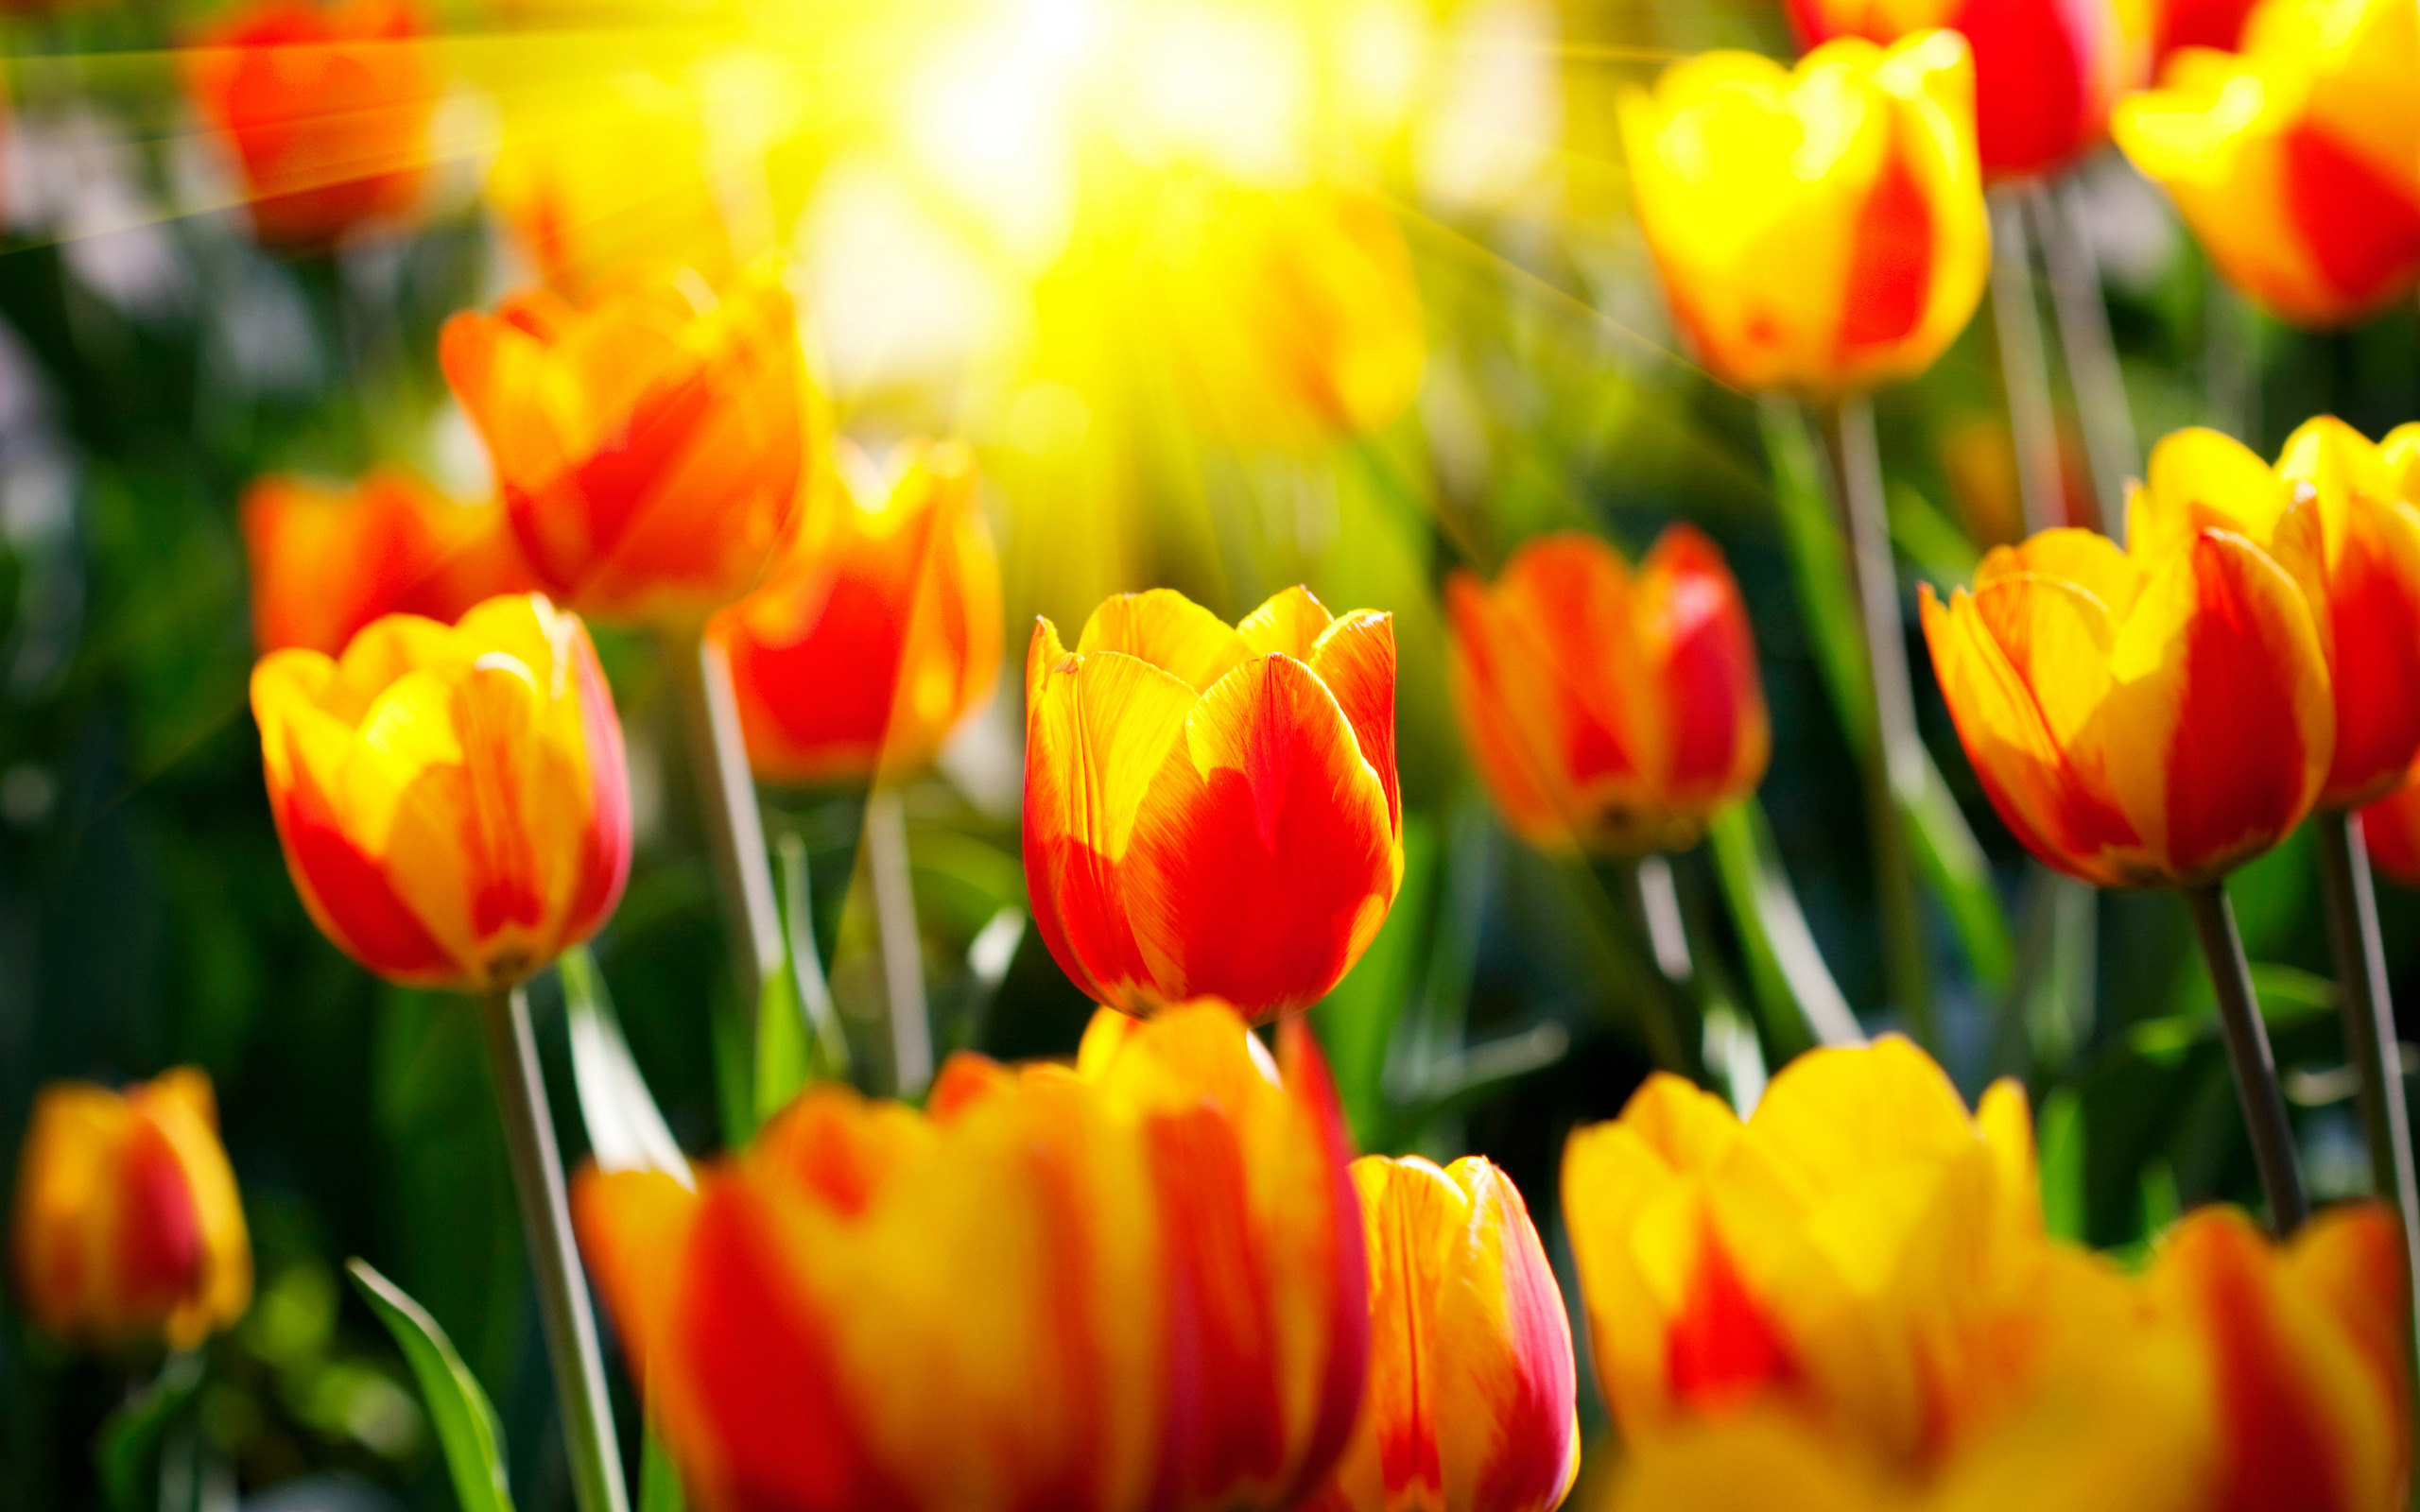 Обои на телефон красивые тюльпаны. Цветы тюльпаны. Яркие цветы. Весенние тюльпаны. Красивые яркие цветы.